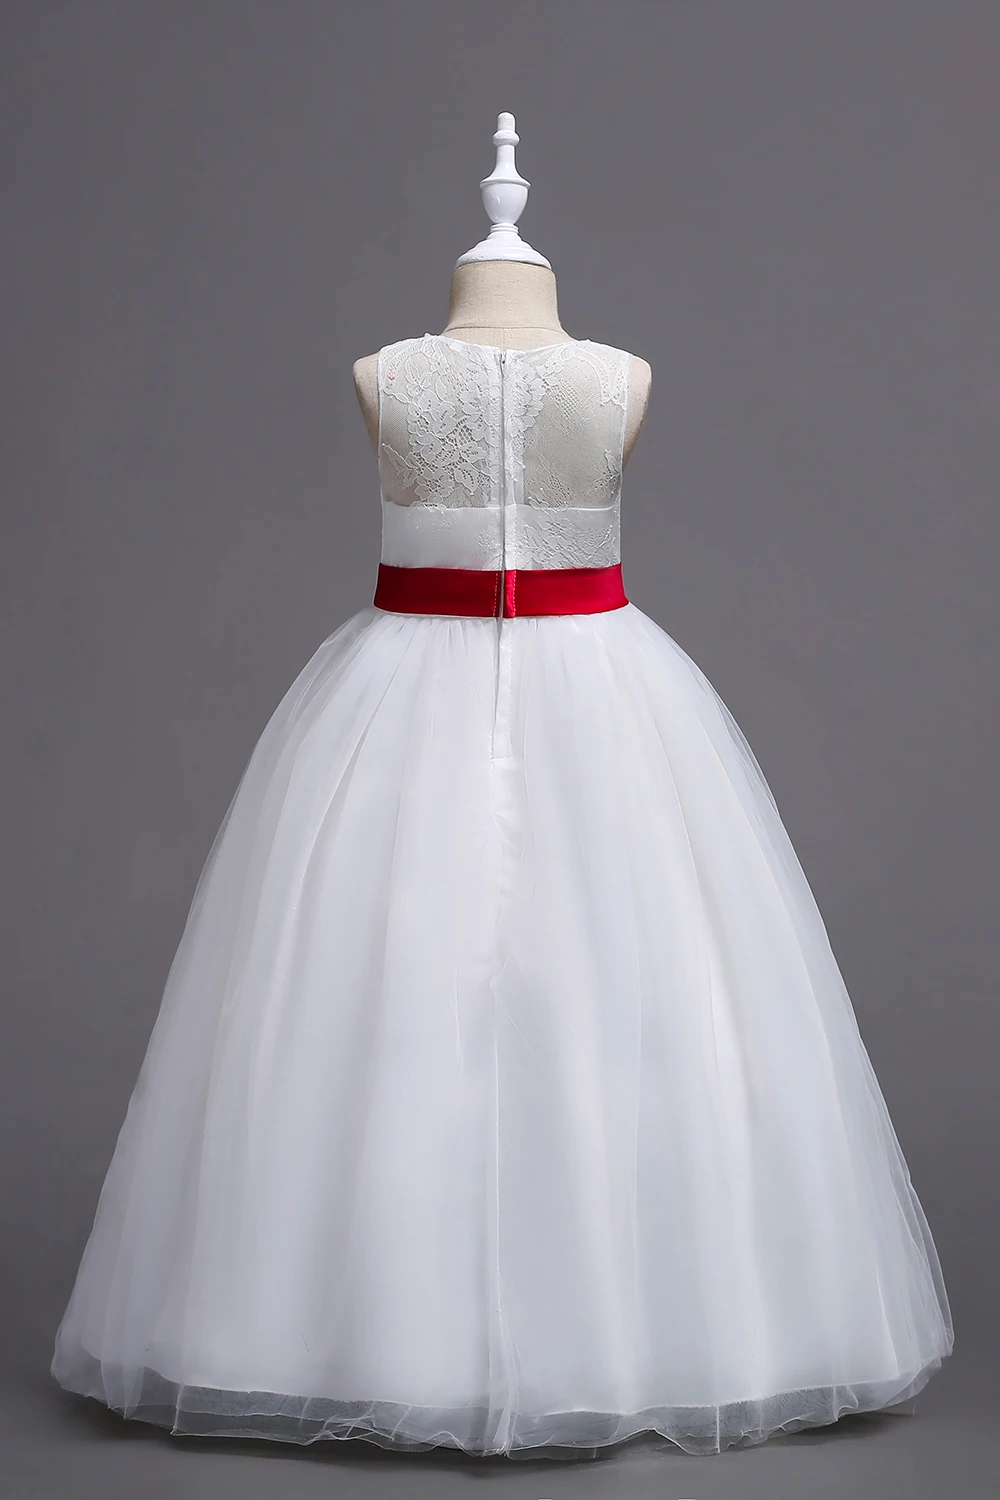 Белые Платья с цветочным узором для девочек кружевное бальное платье 2019 года, пышные платья для девочек с бантом, платья для первого